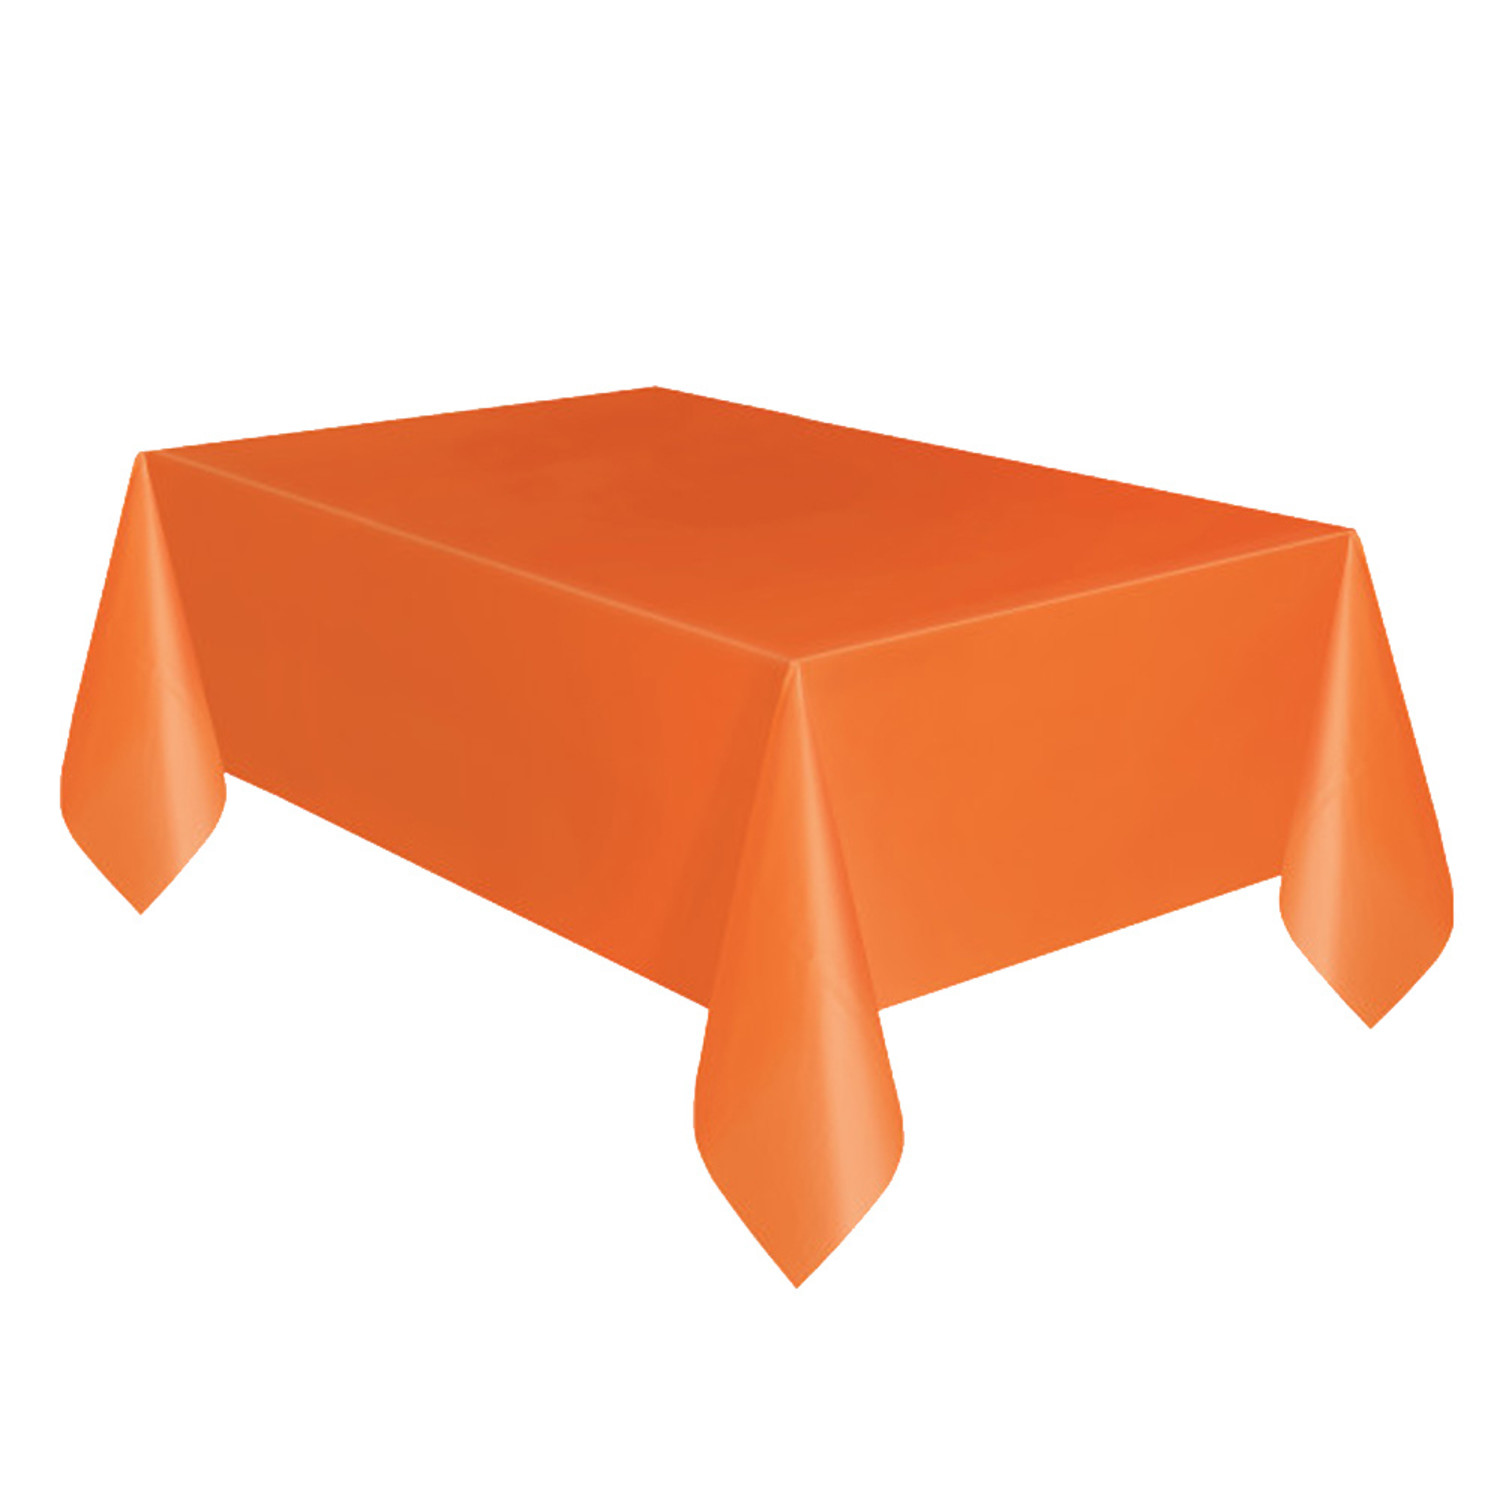 waarheid zondaar Aangenaam kennis te maken Plastic Tafelkleed Oranje 140cm x 274cm • Waterbestendig • Oranje -  Partylove.nl